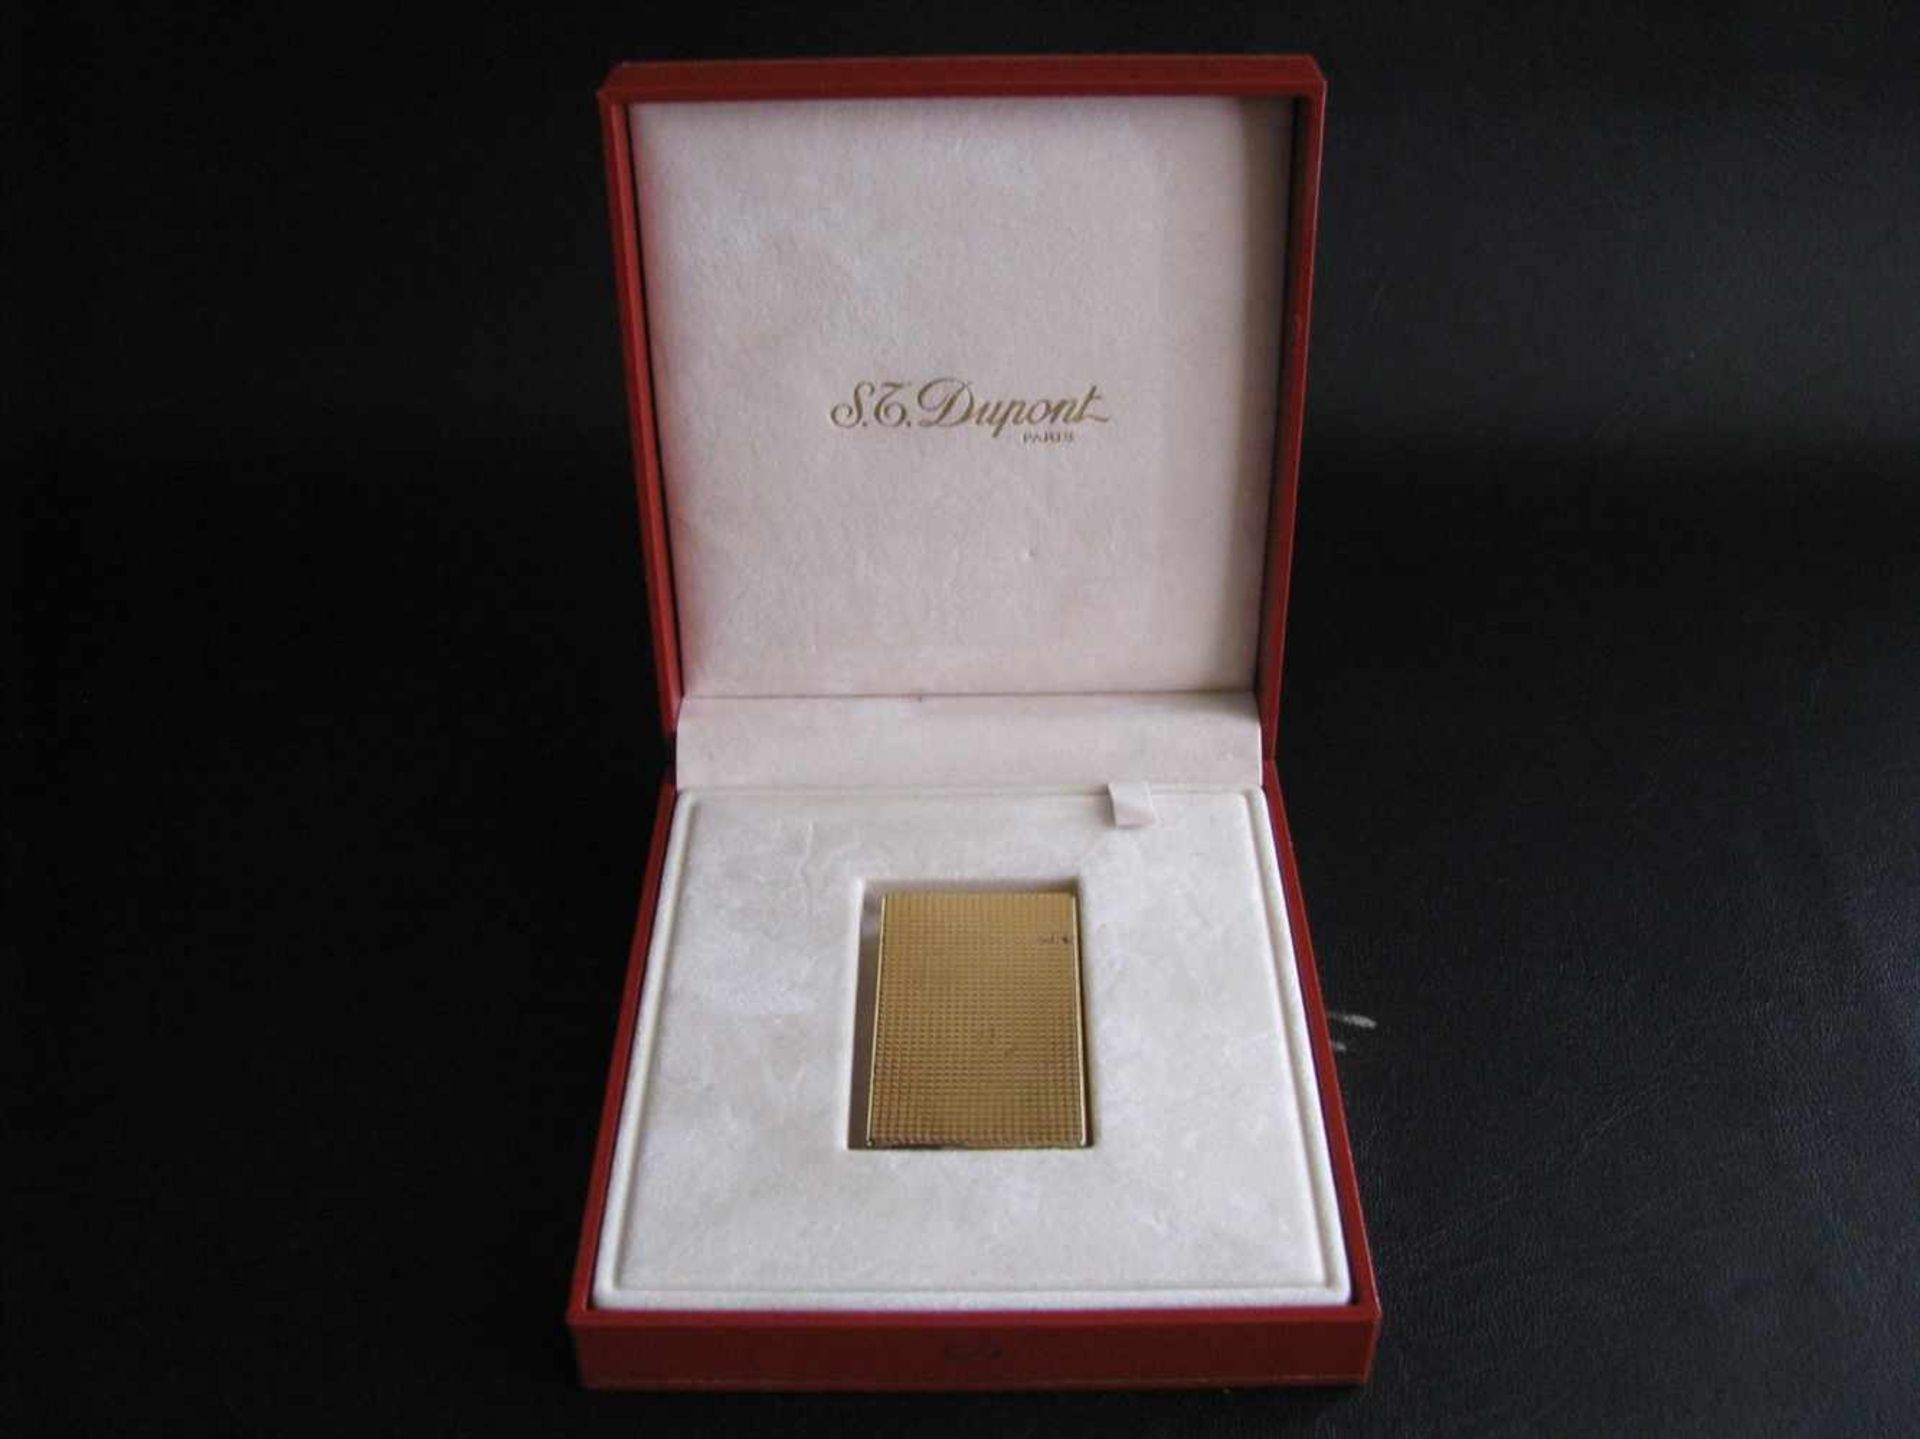 Feuerzeug, St. Dupont Paris, 20 Micron vergoldet, Originalschatulle, Papiere vorhanden, ohne